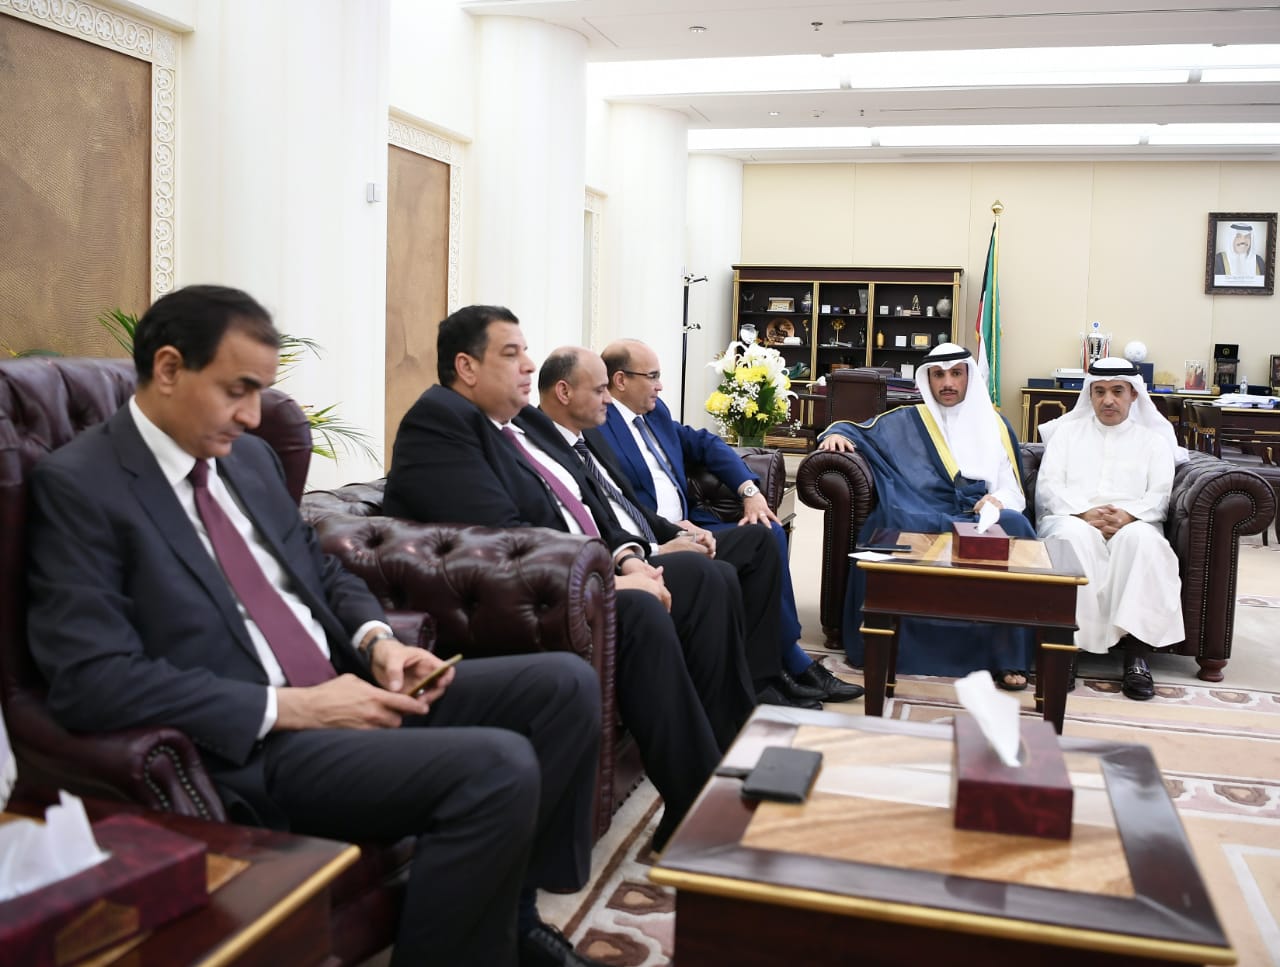 رئيس مجلس الأمة الكويتى خلال لقائه مع رؤساء التحرير المصريين